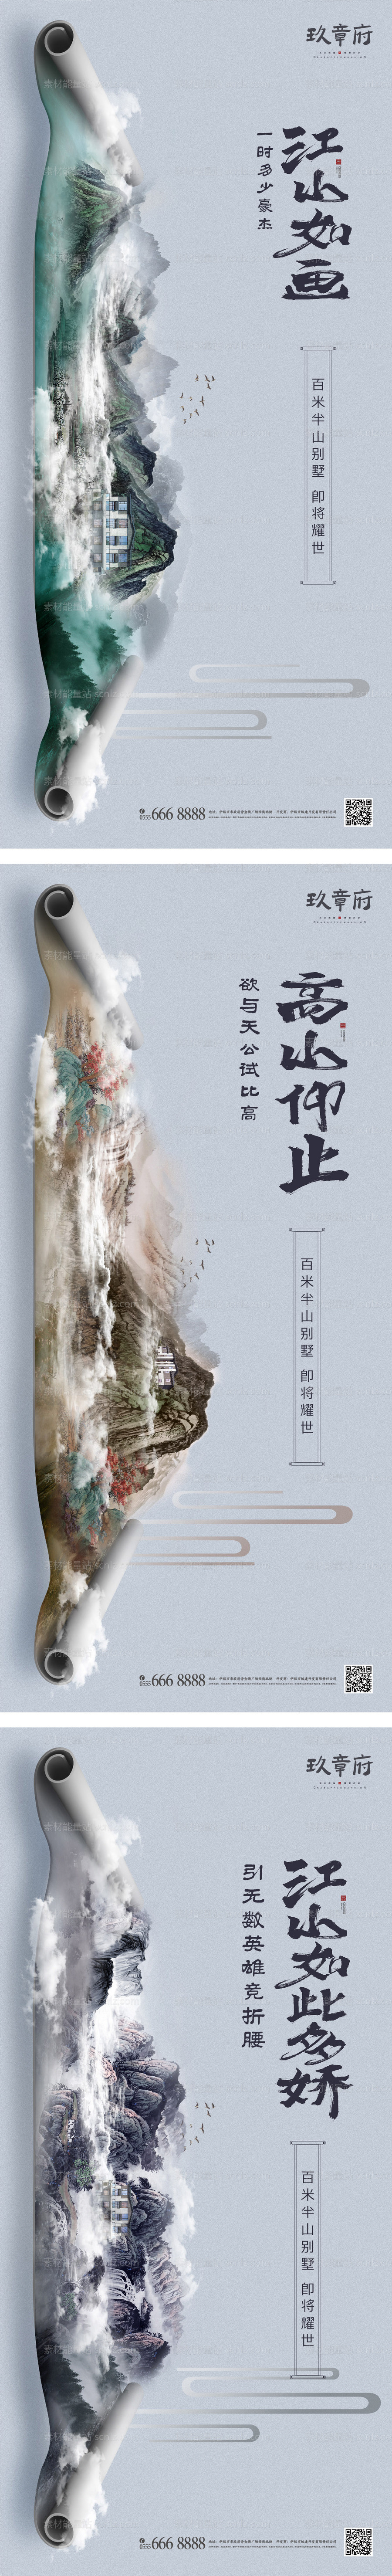 素材能量站-中国风水墨卷轴森林生态别墅系列海报